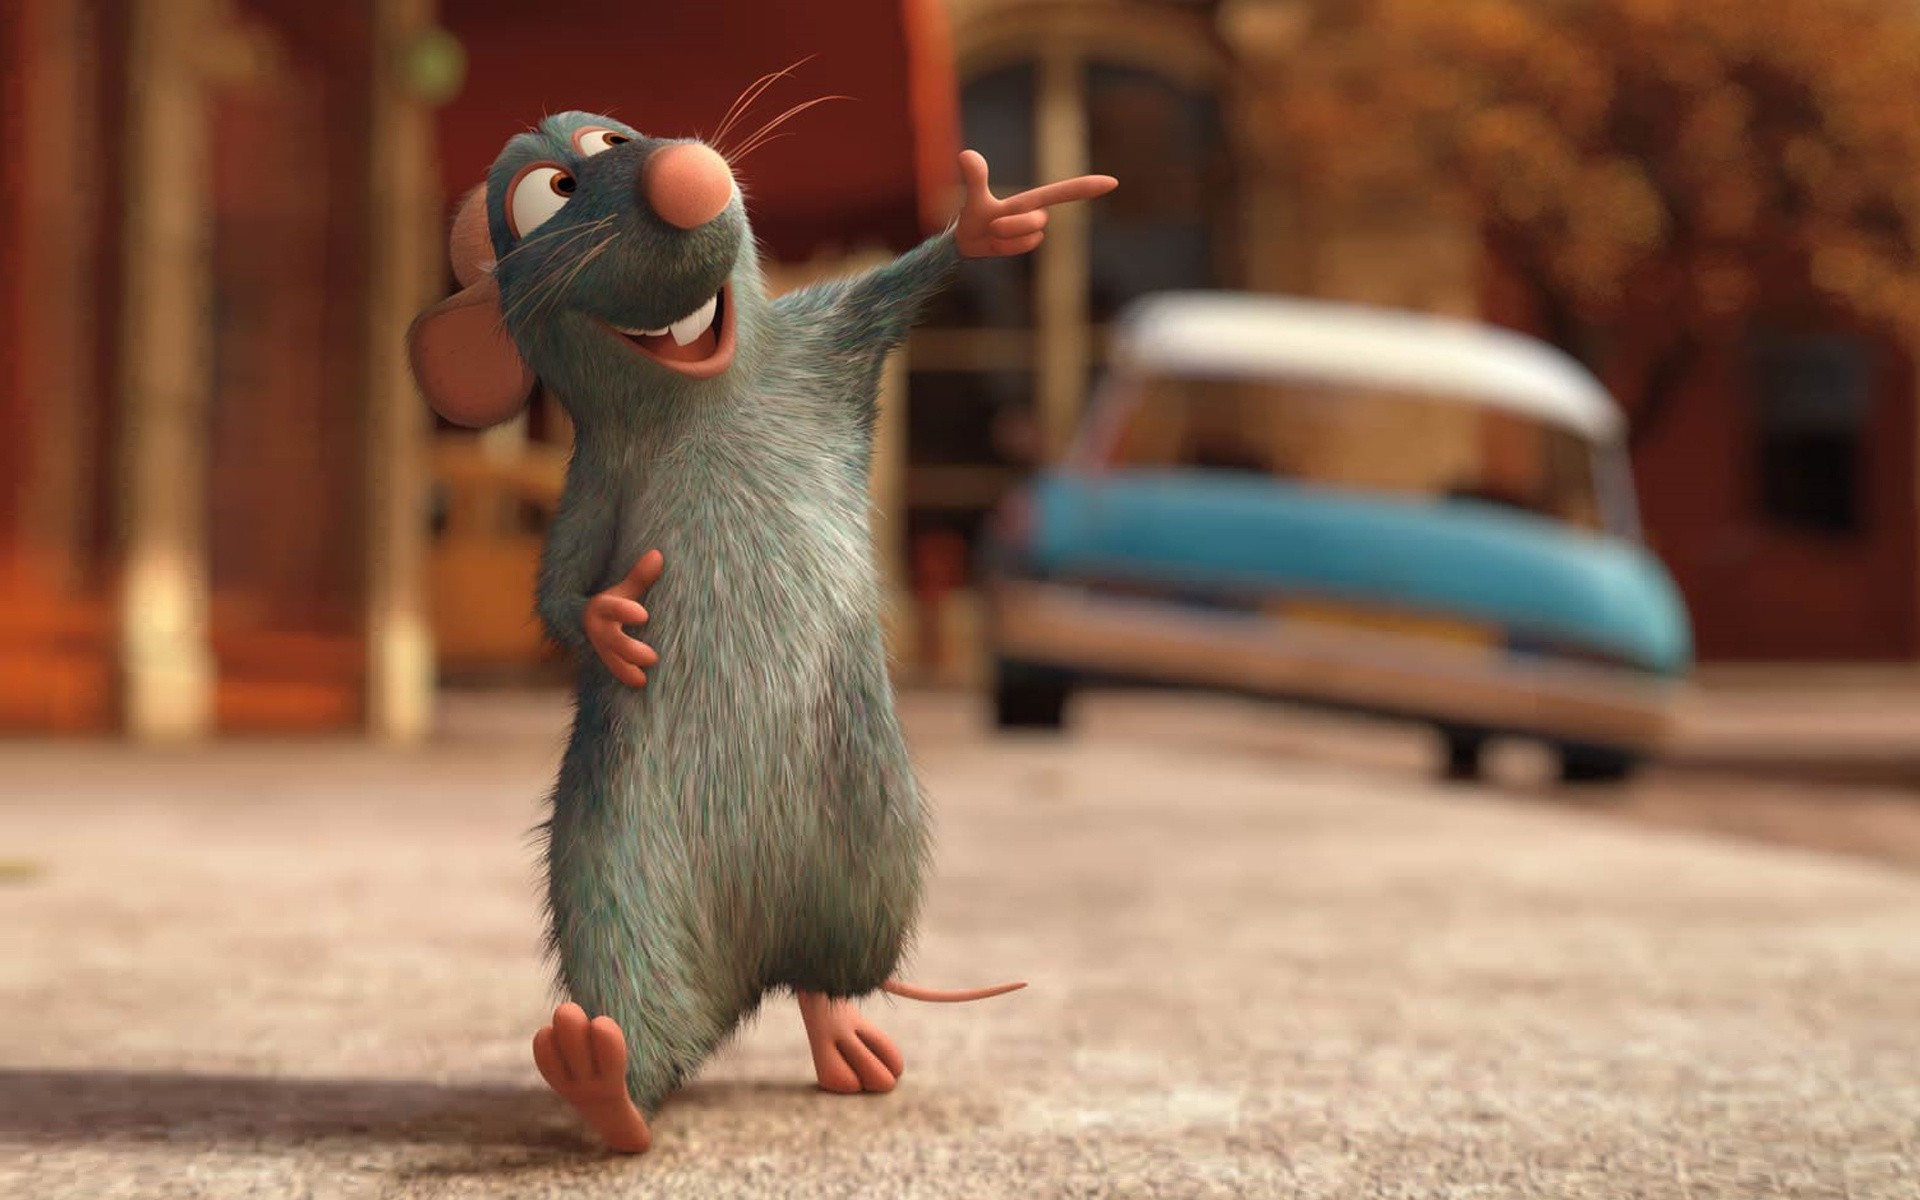 Voir la bande-annonce de Ratatouille, le prochain film d’animation Pixar !